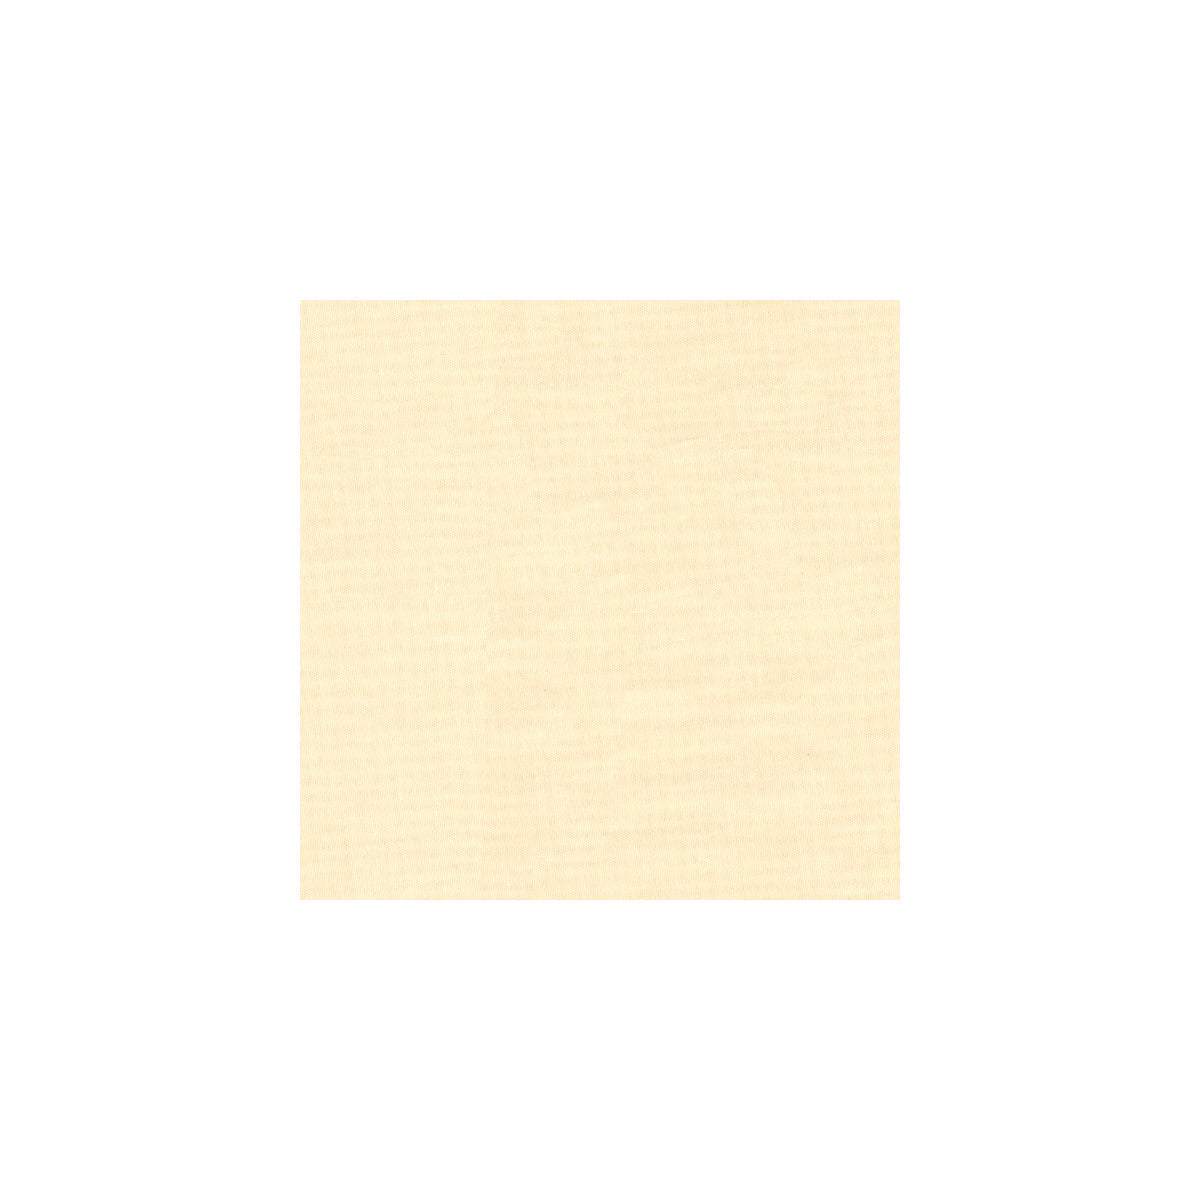 Kravet Basics fabric in 8790-1000 color - pattern 8790.1000.0 - by Kravet Basics